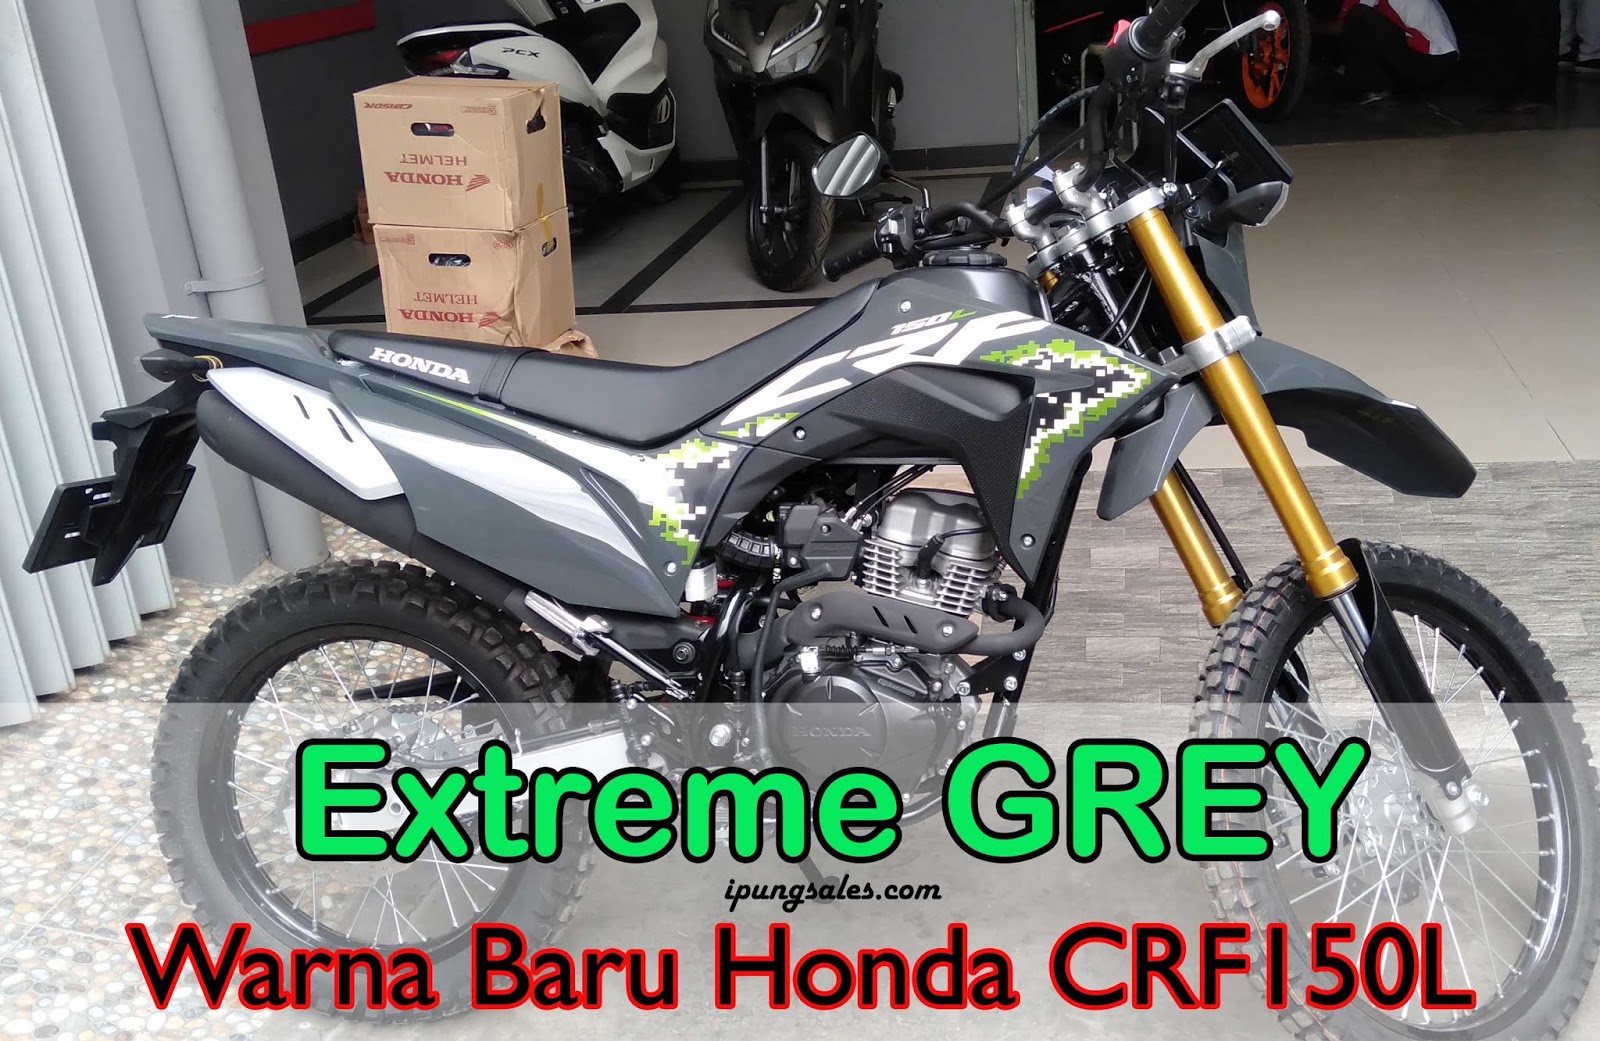 Terbaru Honda CRF 150L 2020 Warna Extreme Grey MAS IPUNG